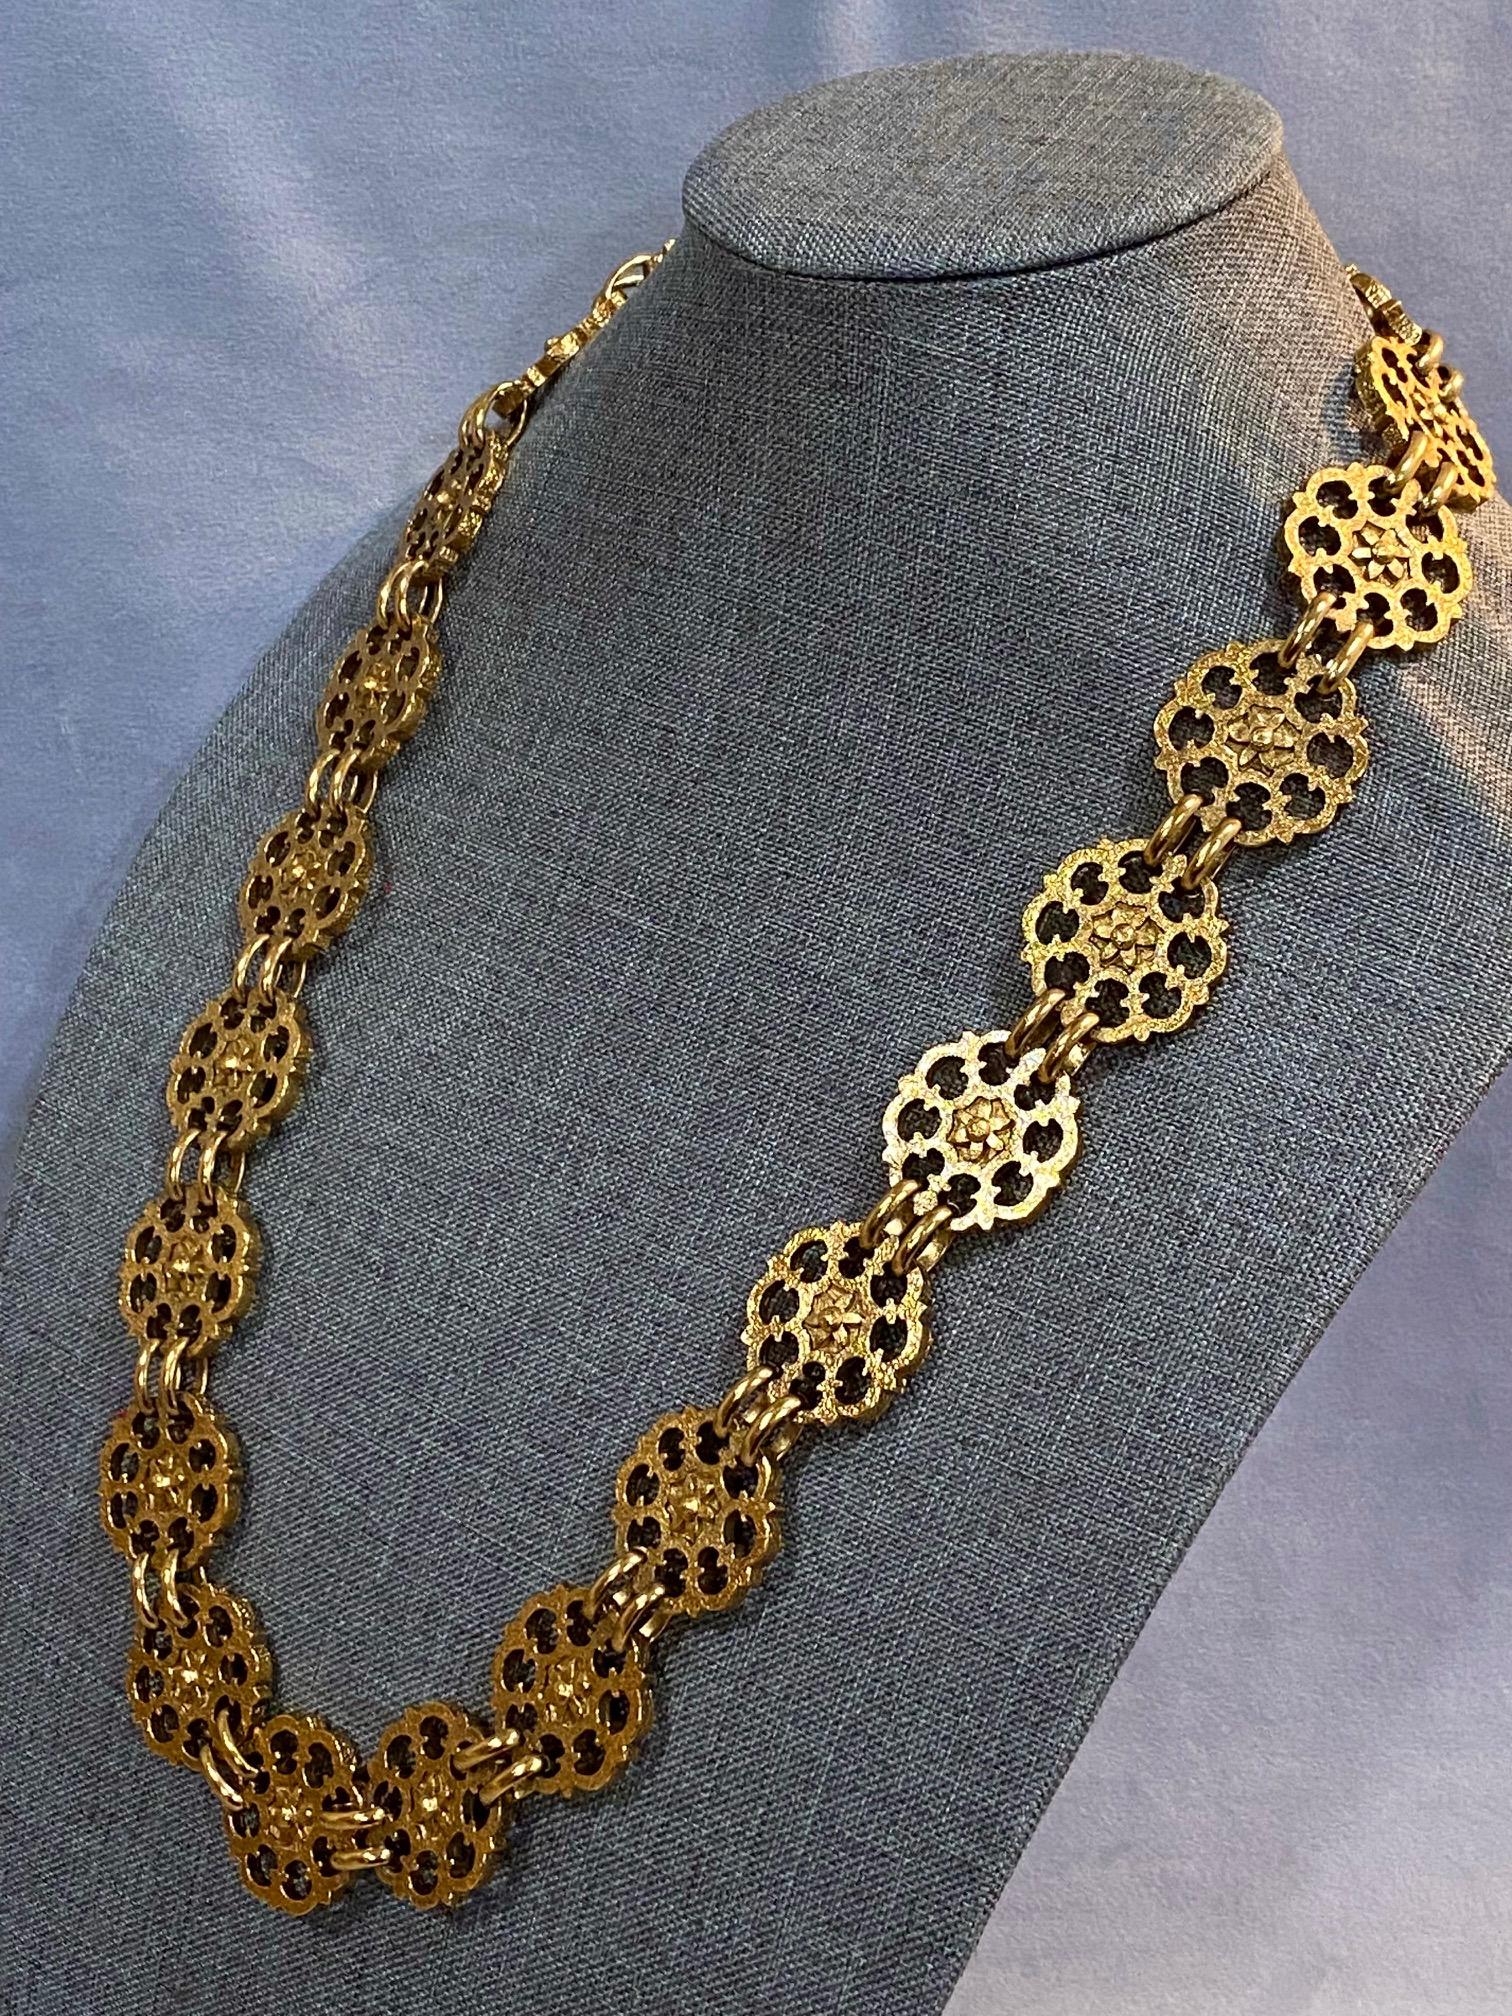 Yves Saint Laurent, Rive Gauche, 1980s Gold Belt / Necklace For Sale 10